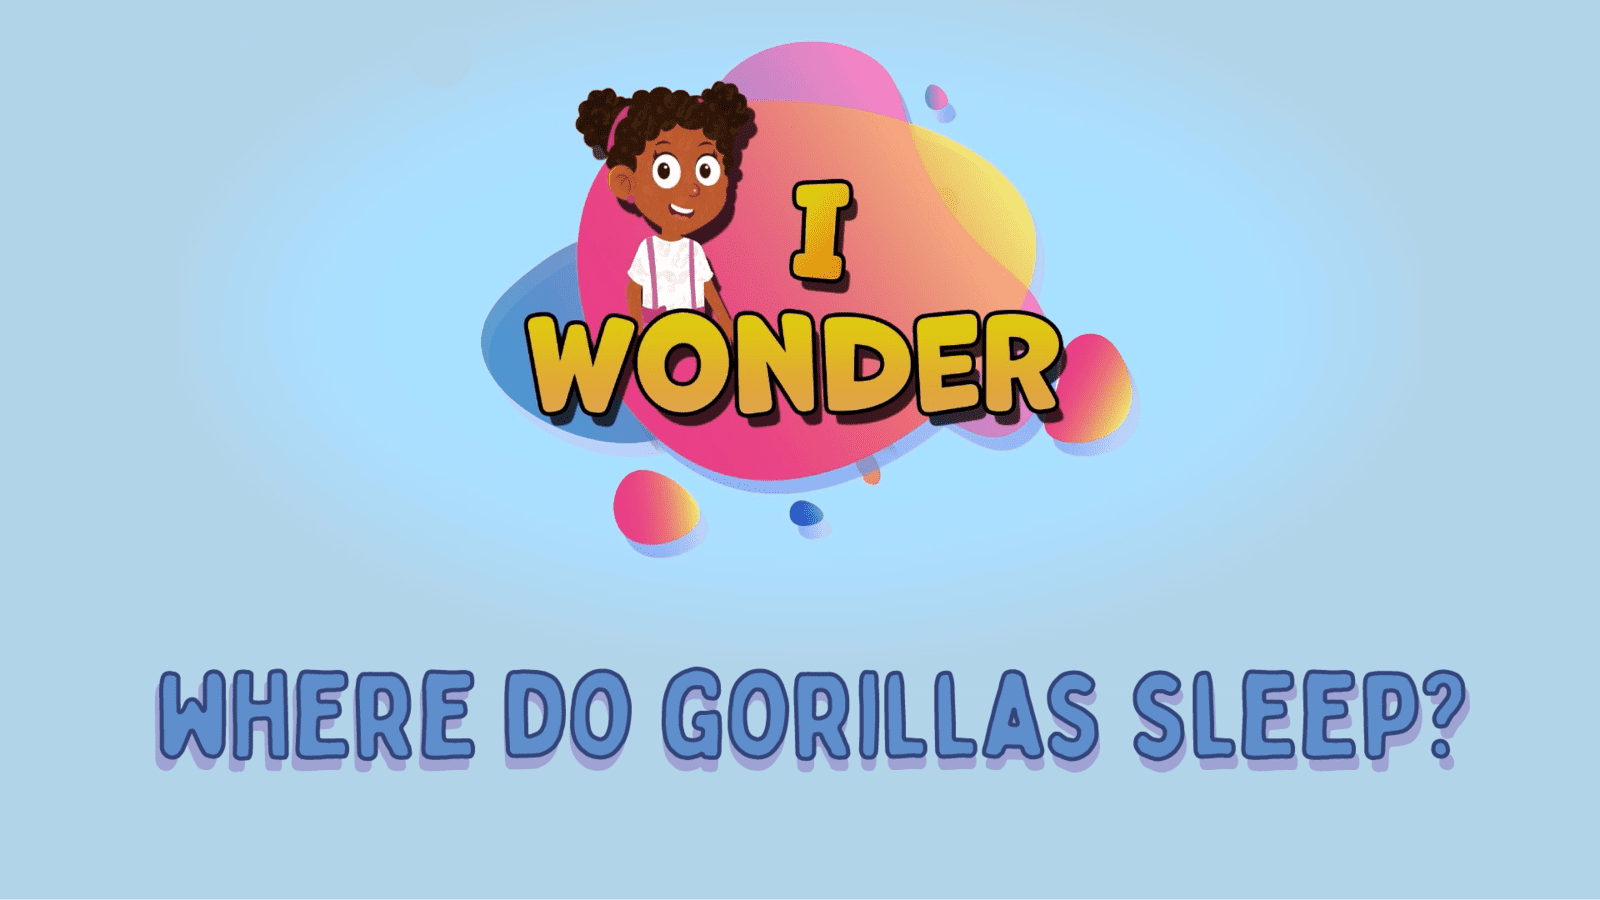 Where Do Gorillas Sleep?